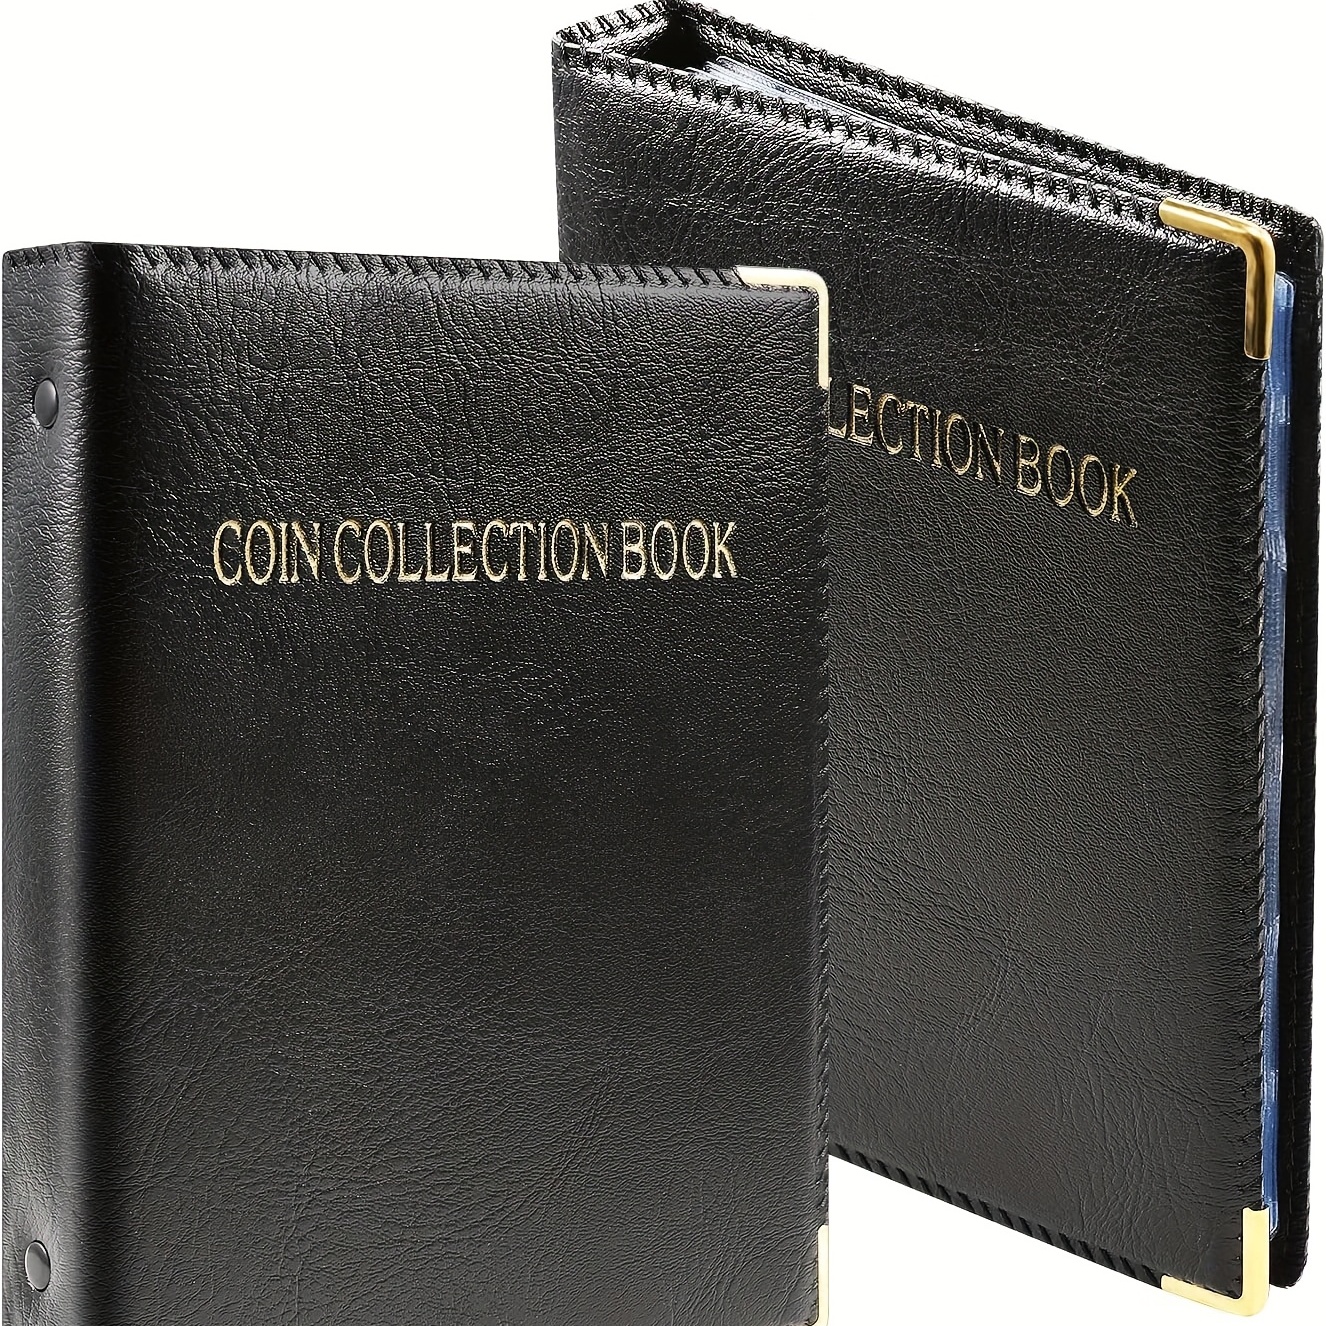 480 Pocket Coin Storage Book Collection Album Folder Money Holder Organizer  8x6